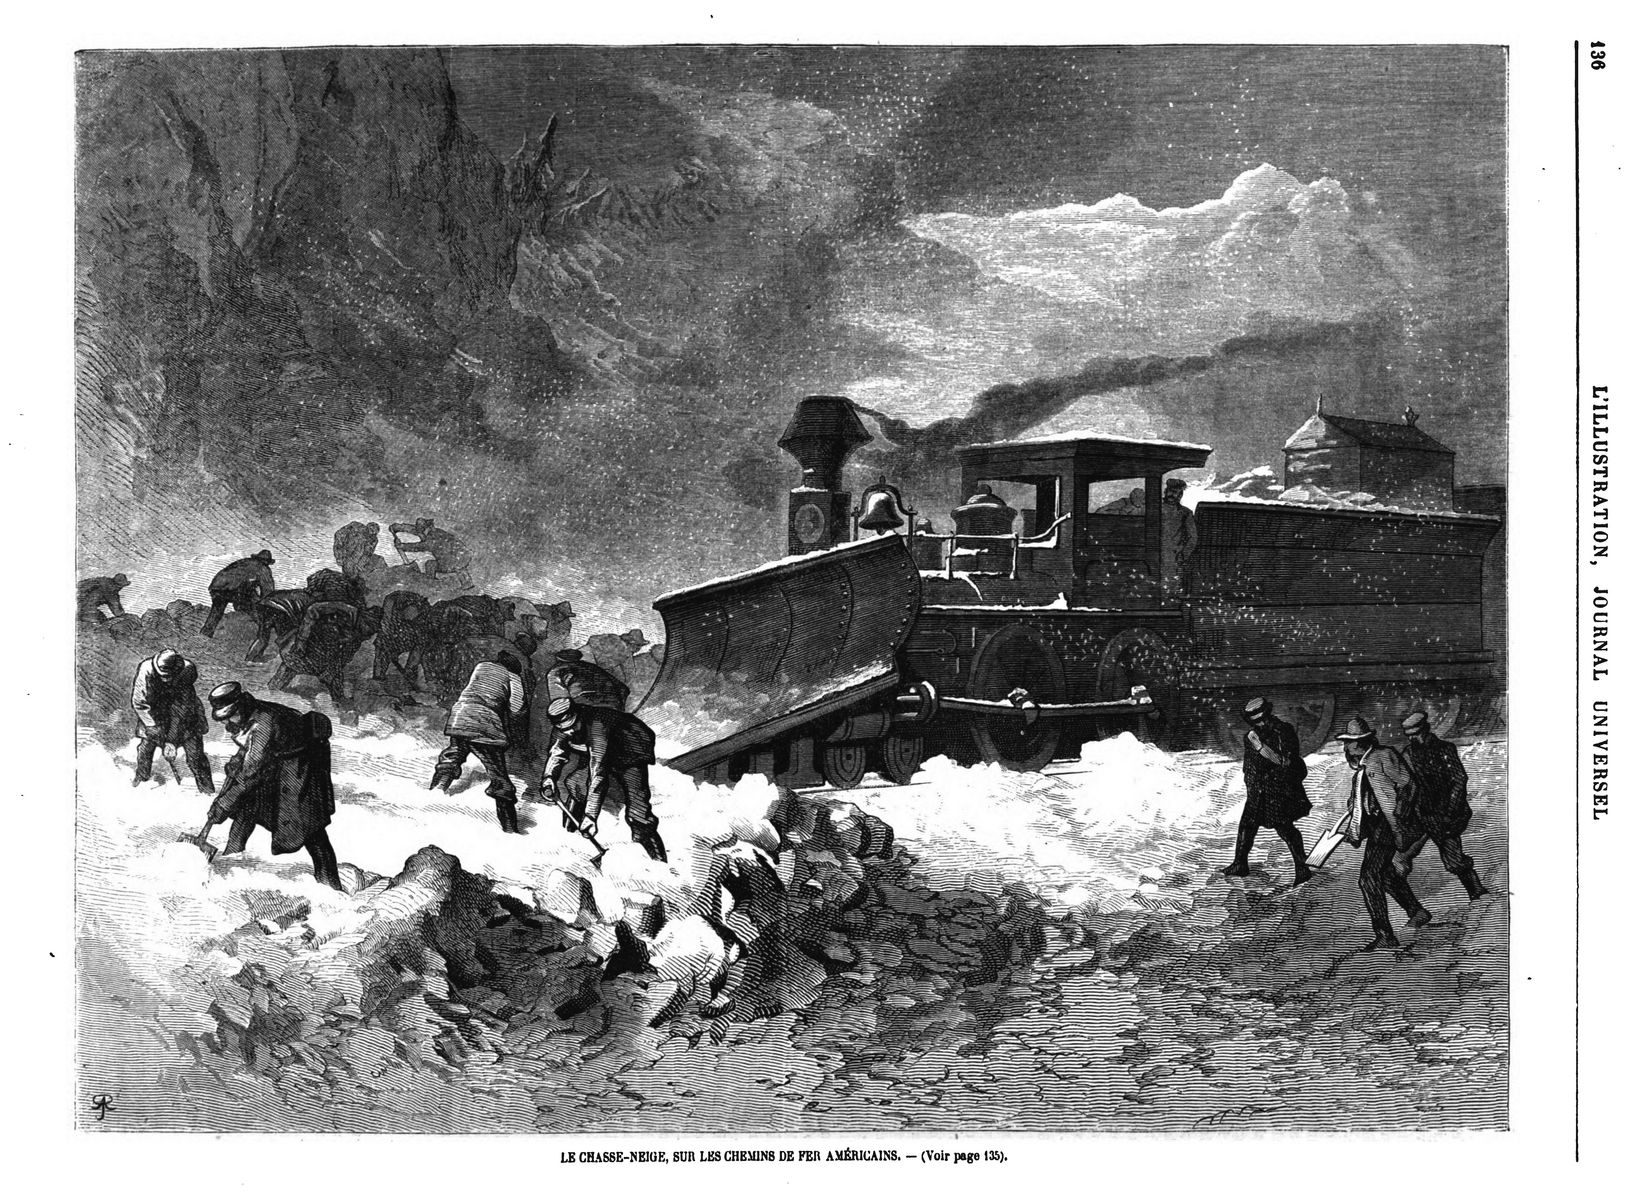 Le chasse-neige sur les chemins de fer américains. 1870